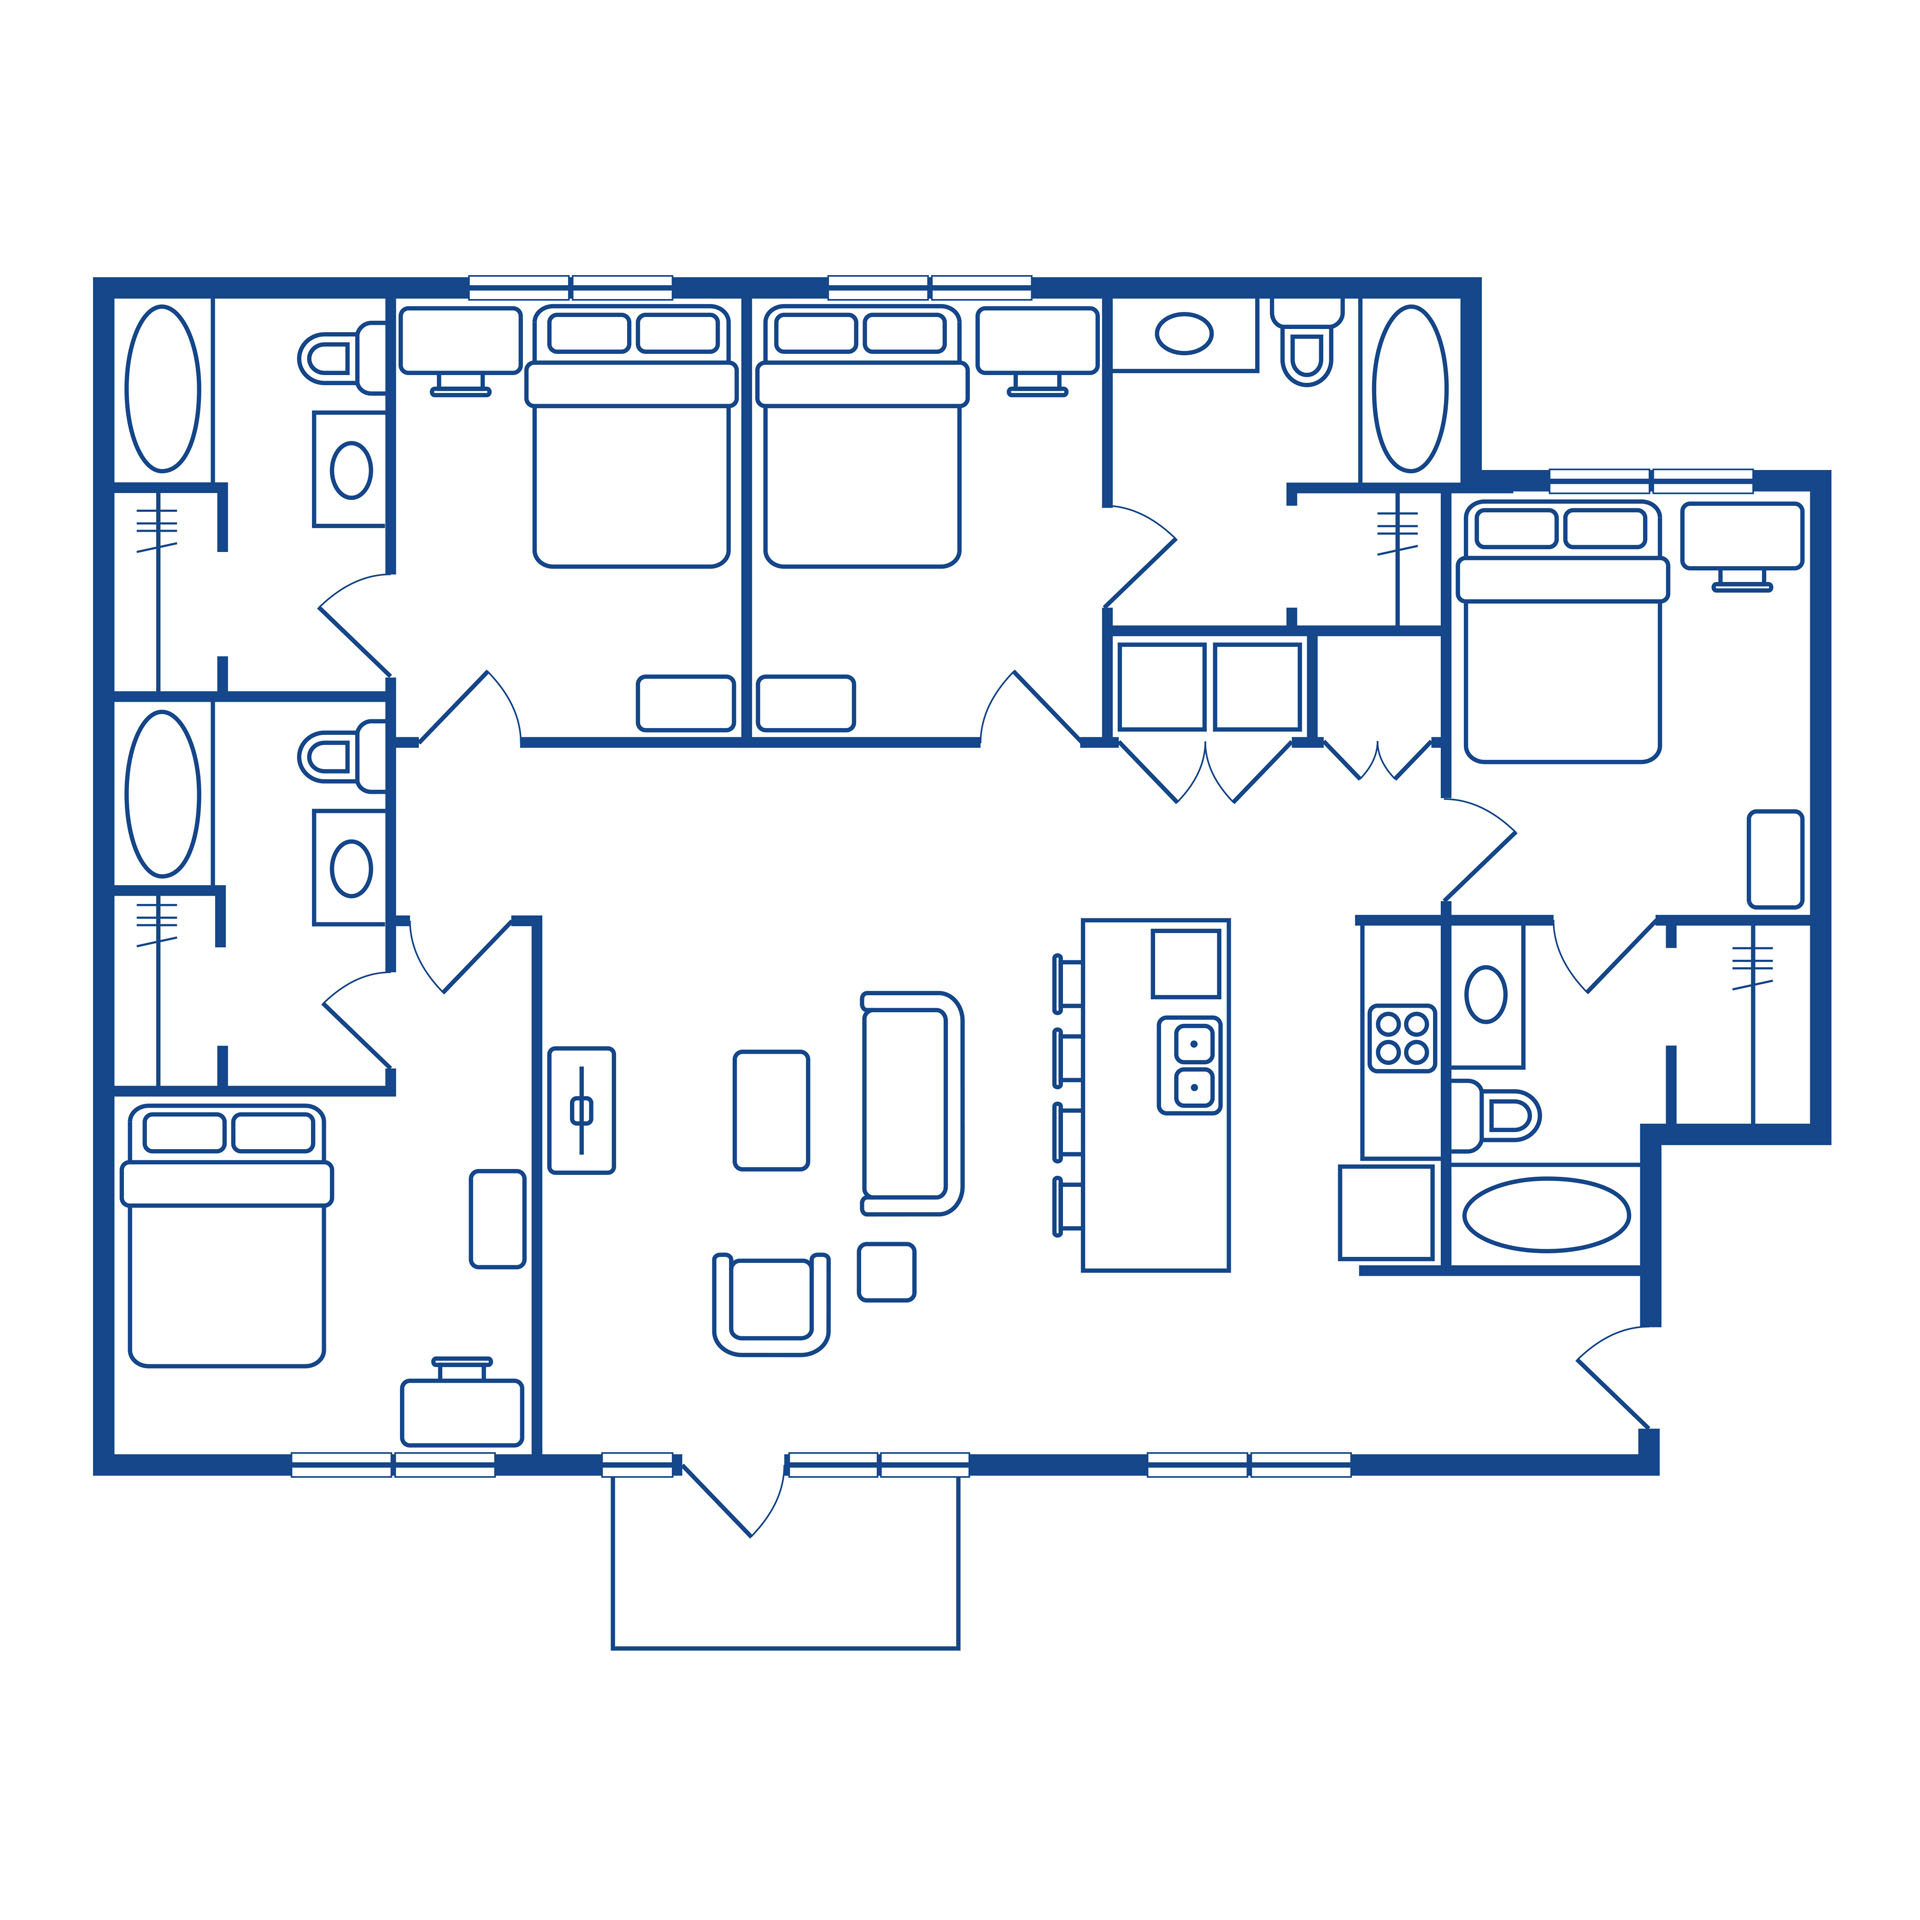 4 bedroom / 4 bath tower floor plan - Option 2